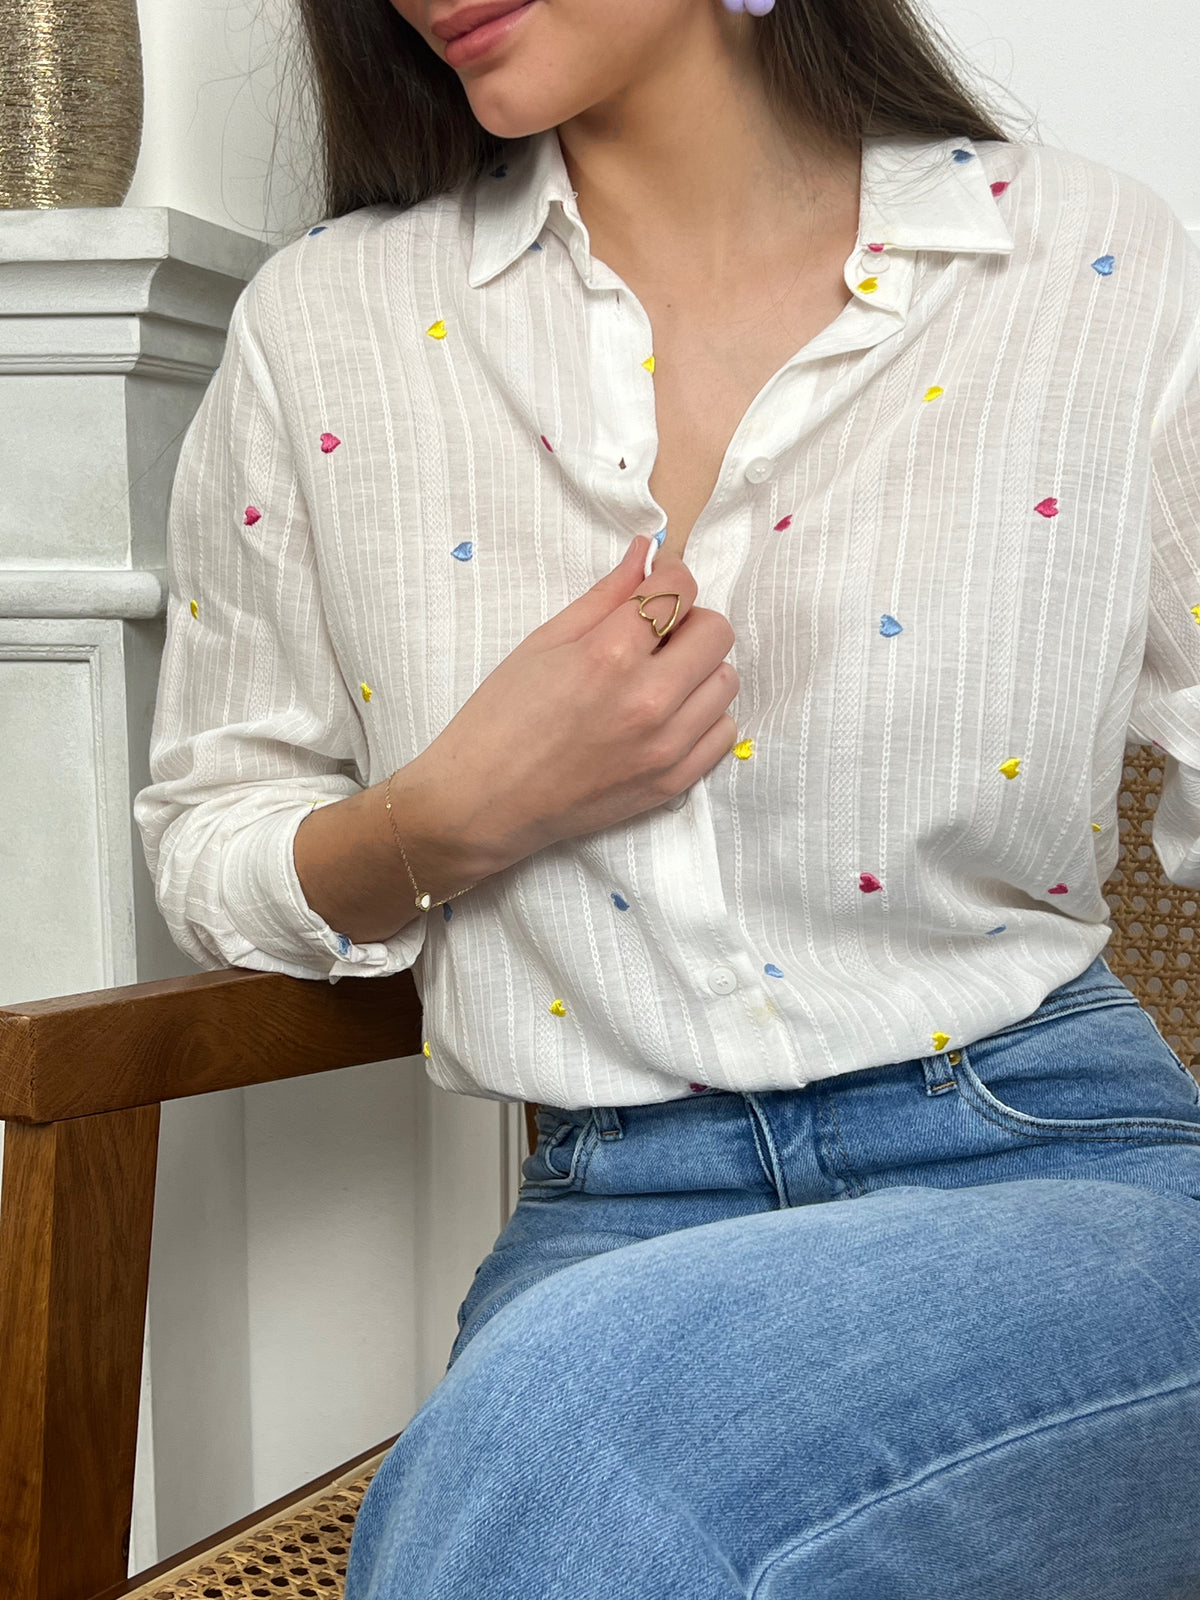 Apportez une touche de gaieté à votre garde-robe avec la chemise Daria, ornée de petits coeurs colorés sur toute sa surface. Conçue en tissu écrue, cette chemise apportera une note de couleur et de fantaisie à toutes vos tenues.